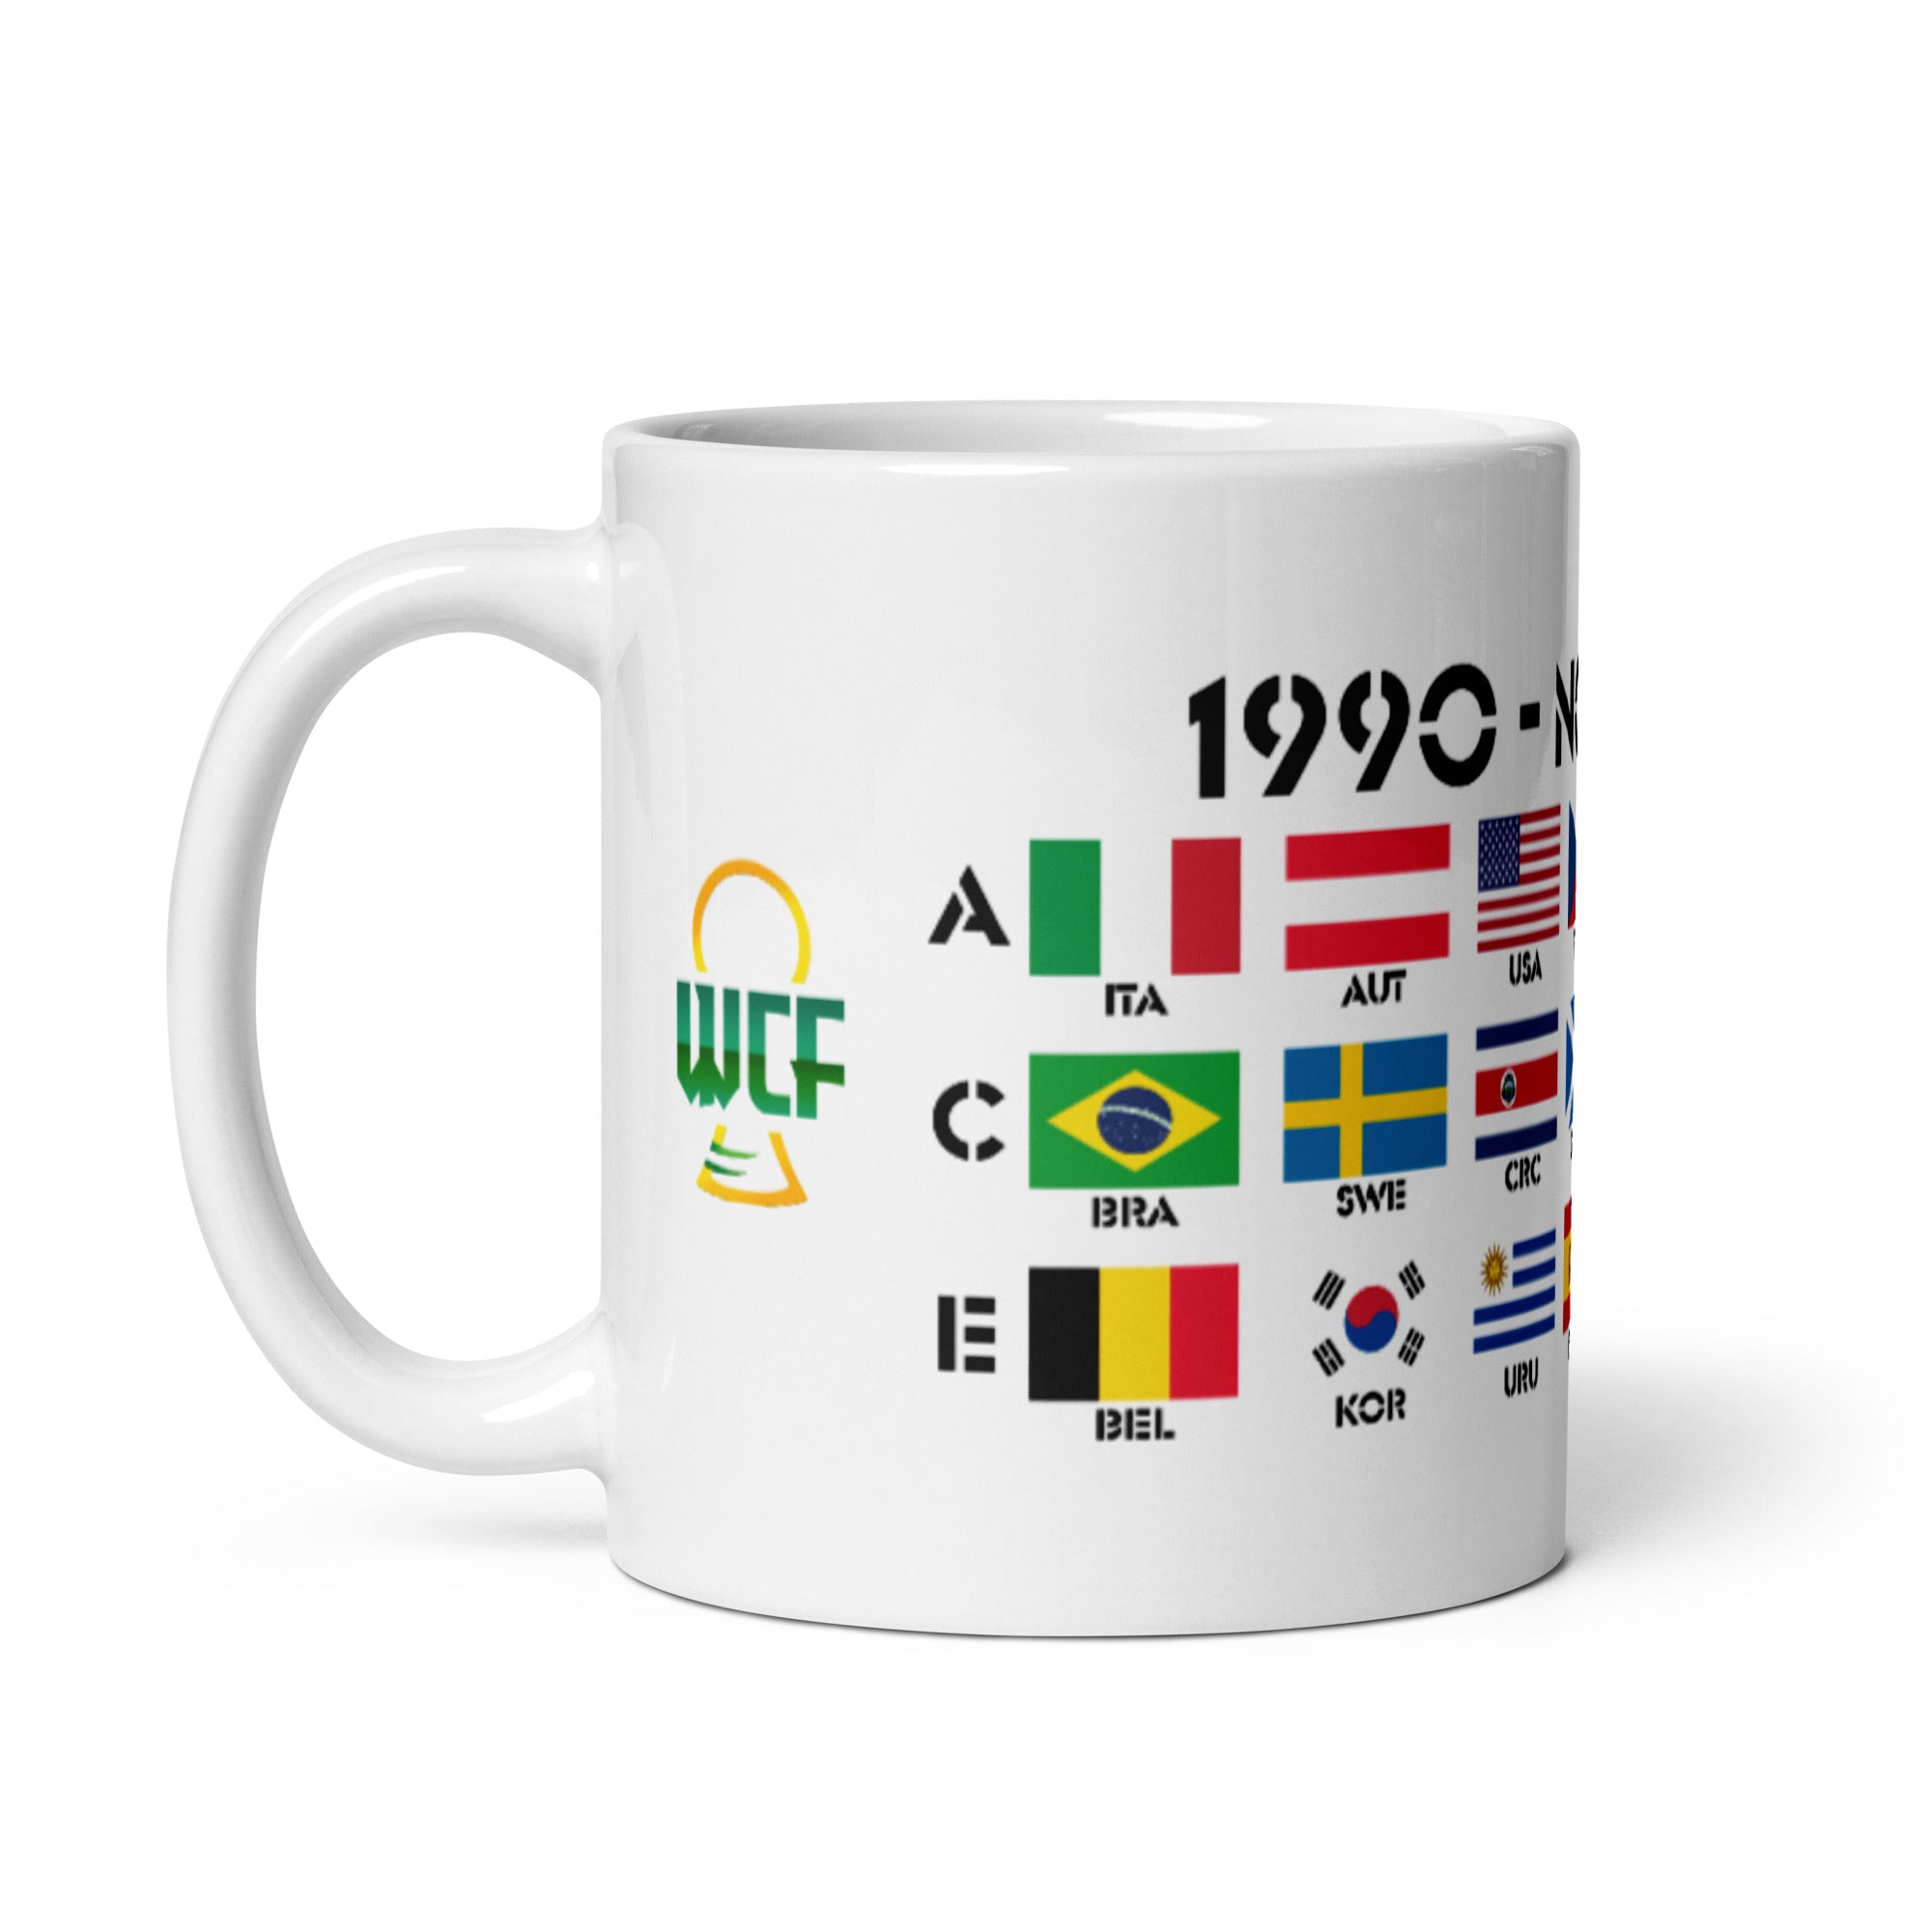 FIFA World Cup Italia 1990 Mug - NOTTI MAGICHE